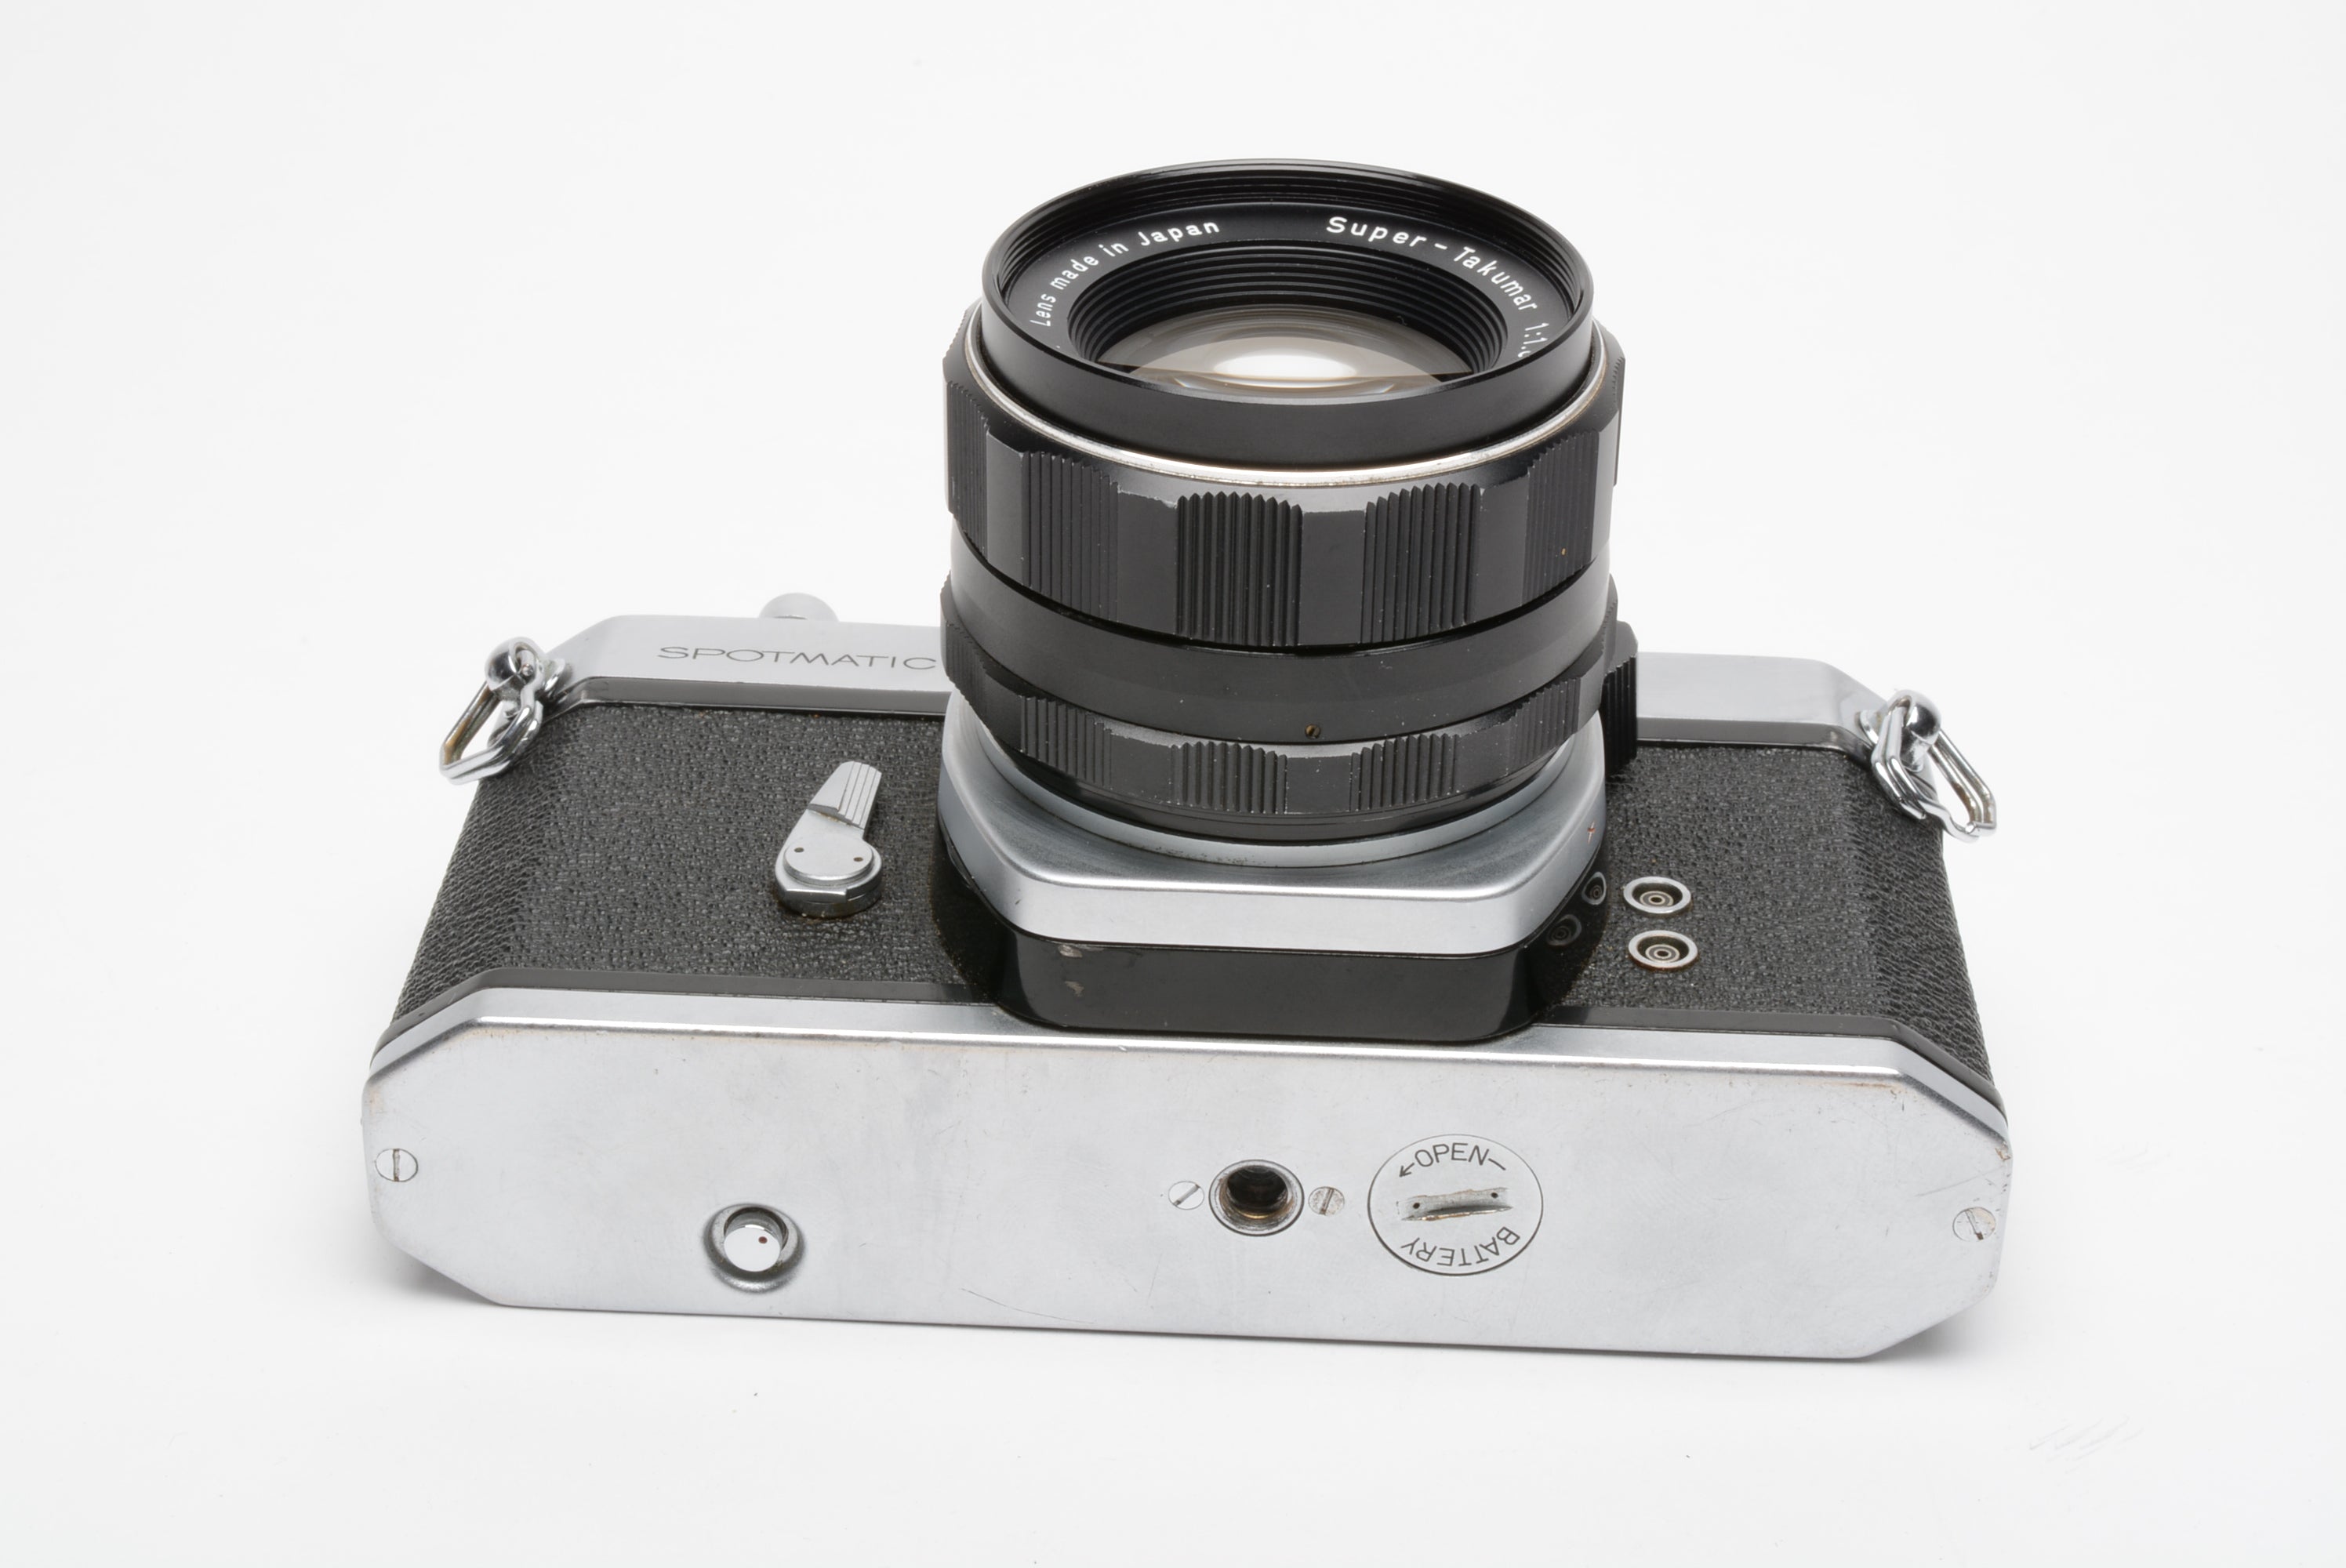 Pentax Spotmatic SP chrome 35mm SLR w/Super Takumar 55mm F1.8 mm F1.8, new  seals